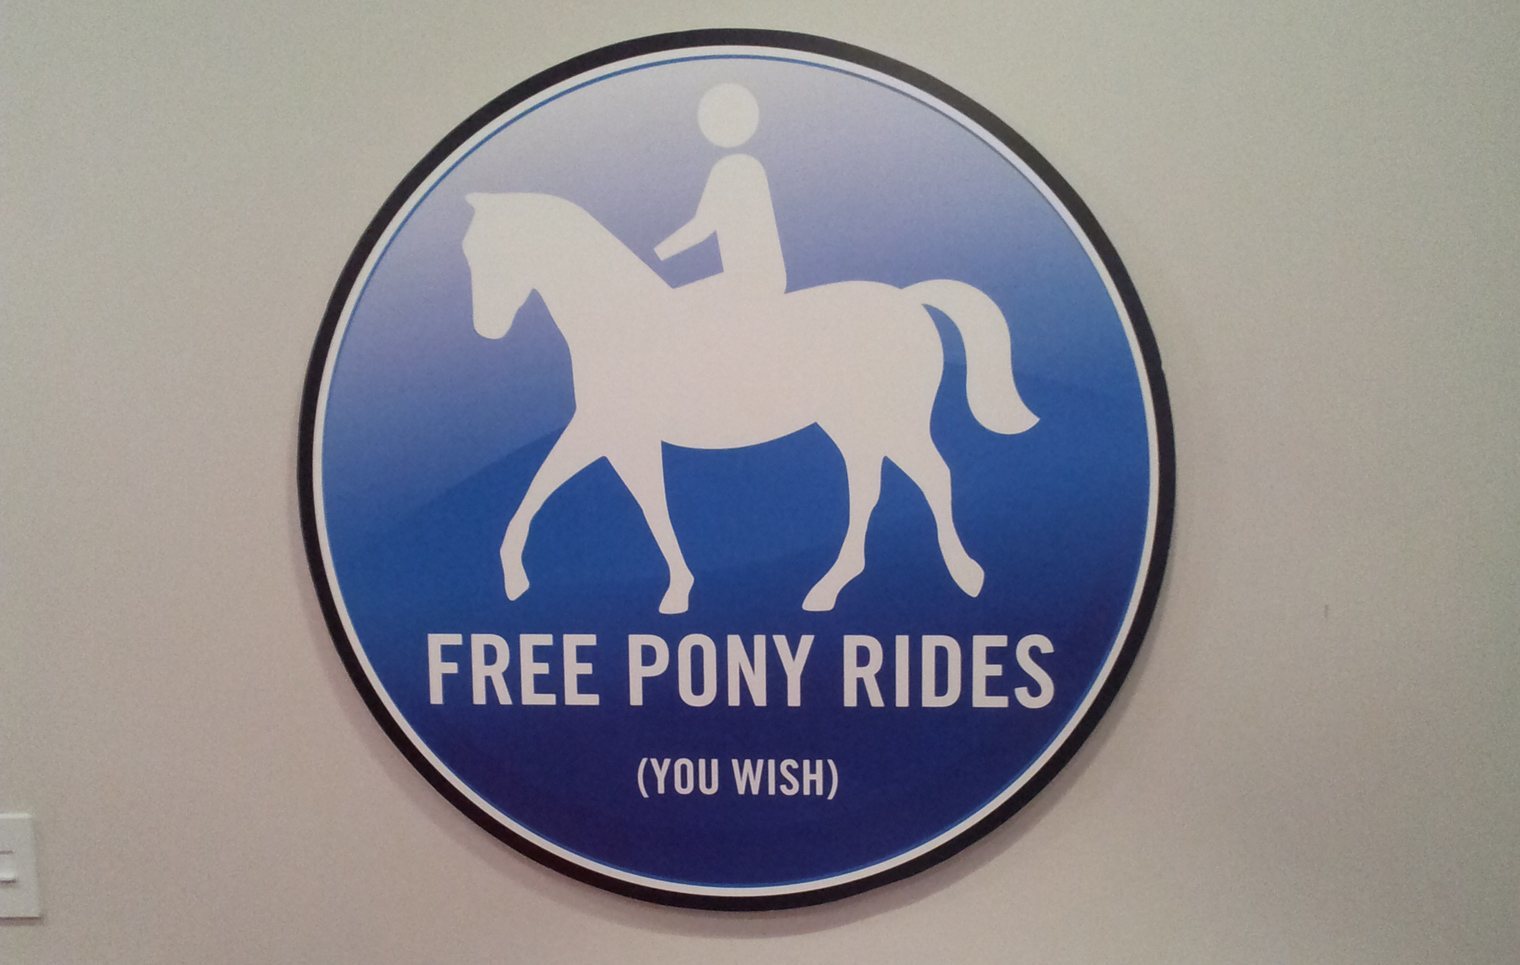 Pony rides